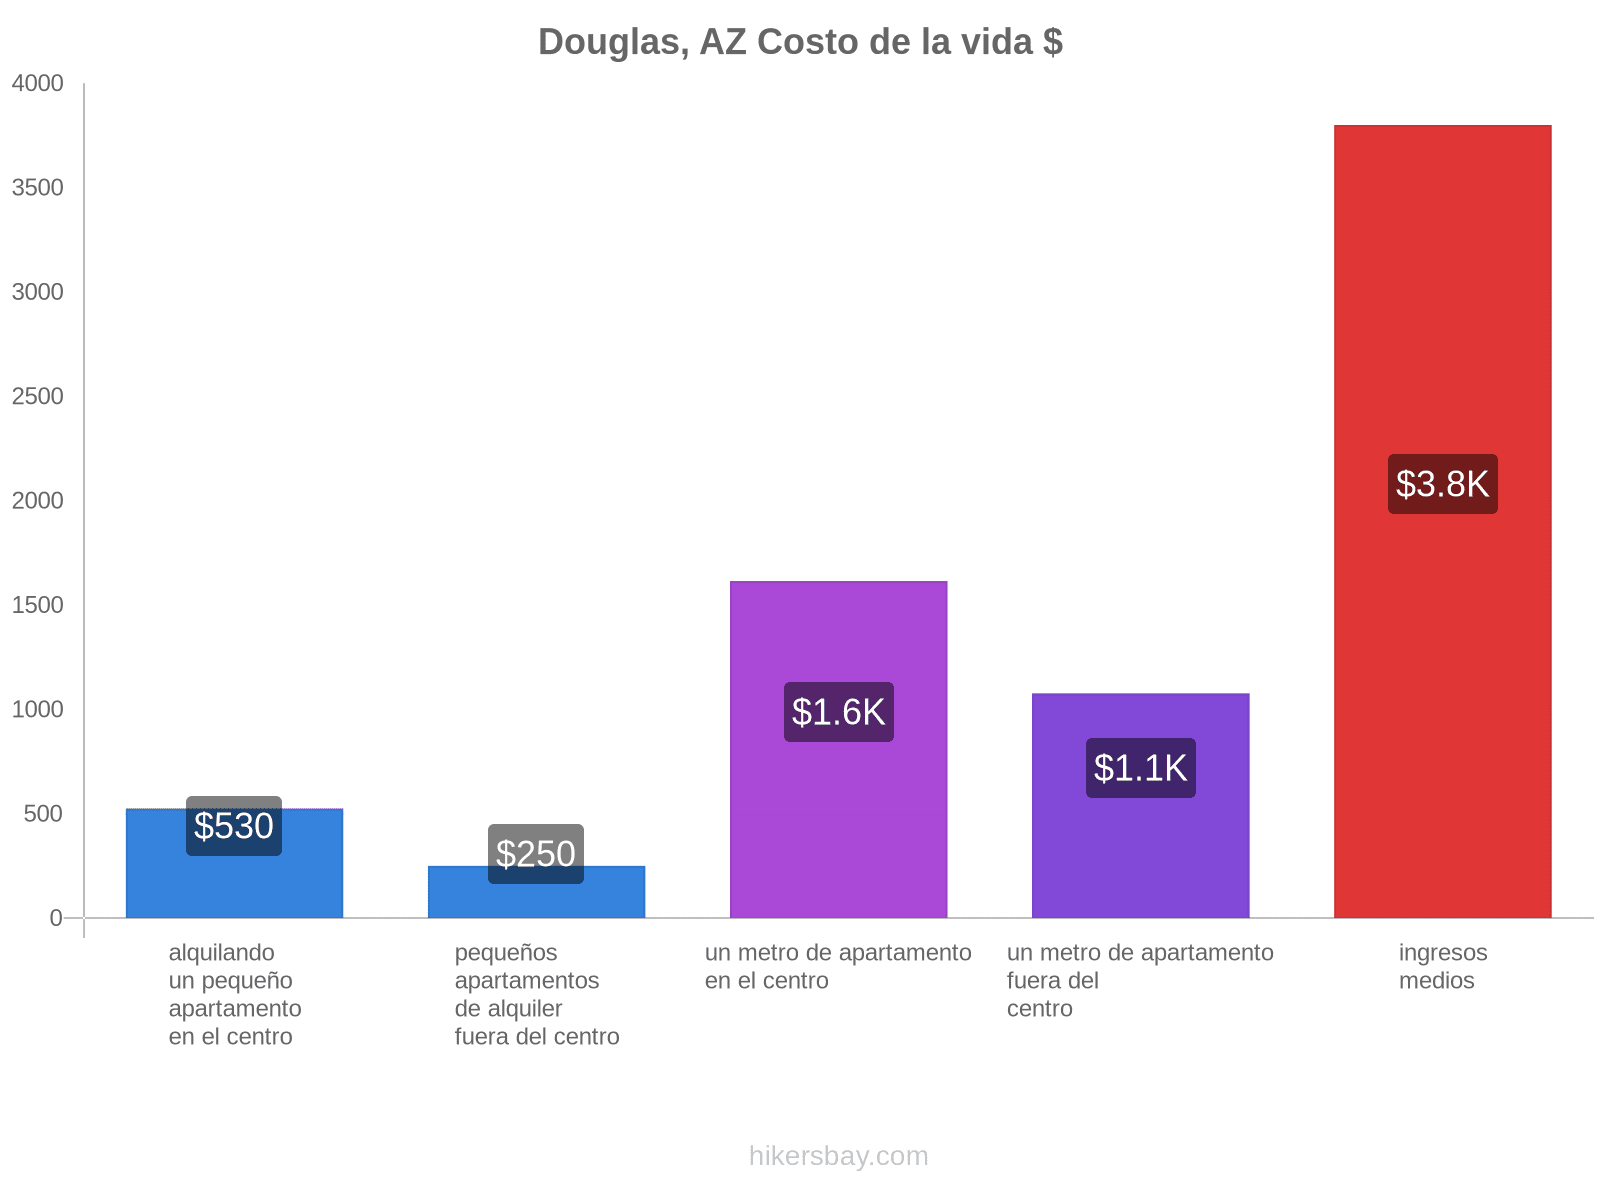 Douglas, AZ costo de la vida hikersbay.com